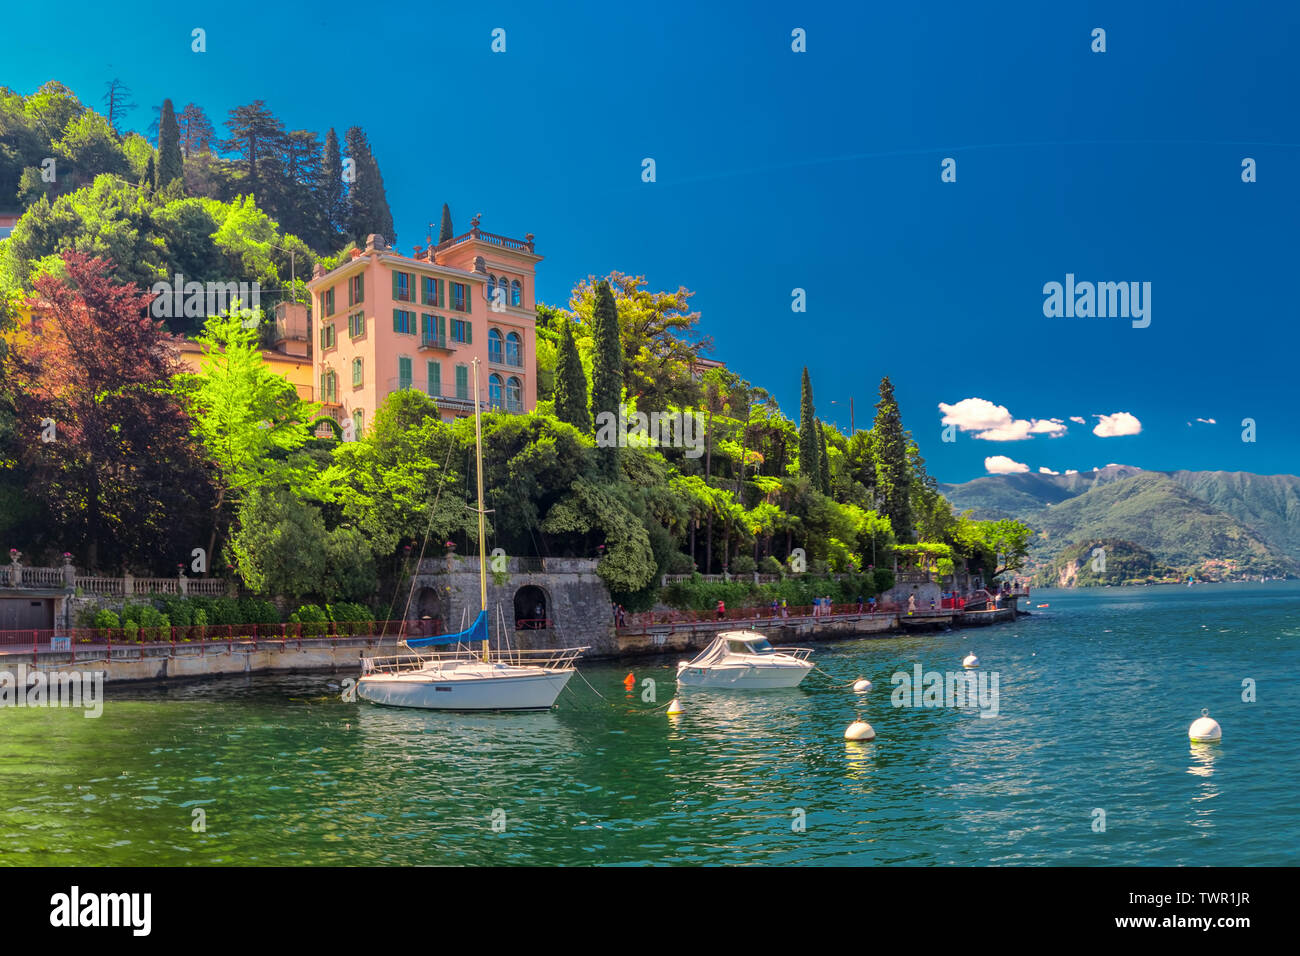 VARENNA, Italia - Giugno 1, 2019 - Traghetto a Varenna vecchia città sul lago di Como con le montagne sullo sfondo, l'Italia, l'Europa. Foto Stock